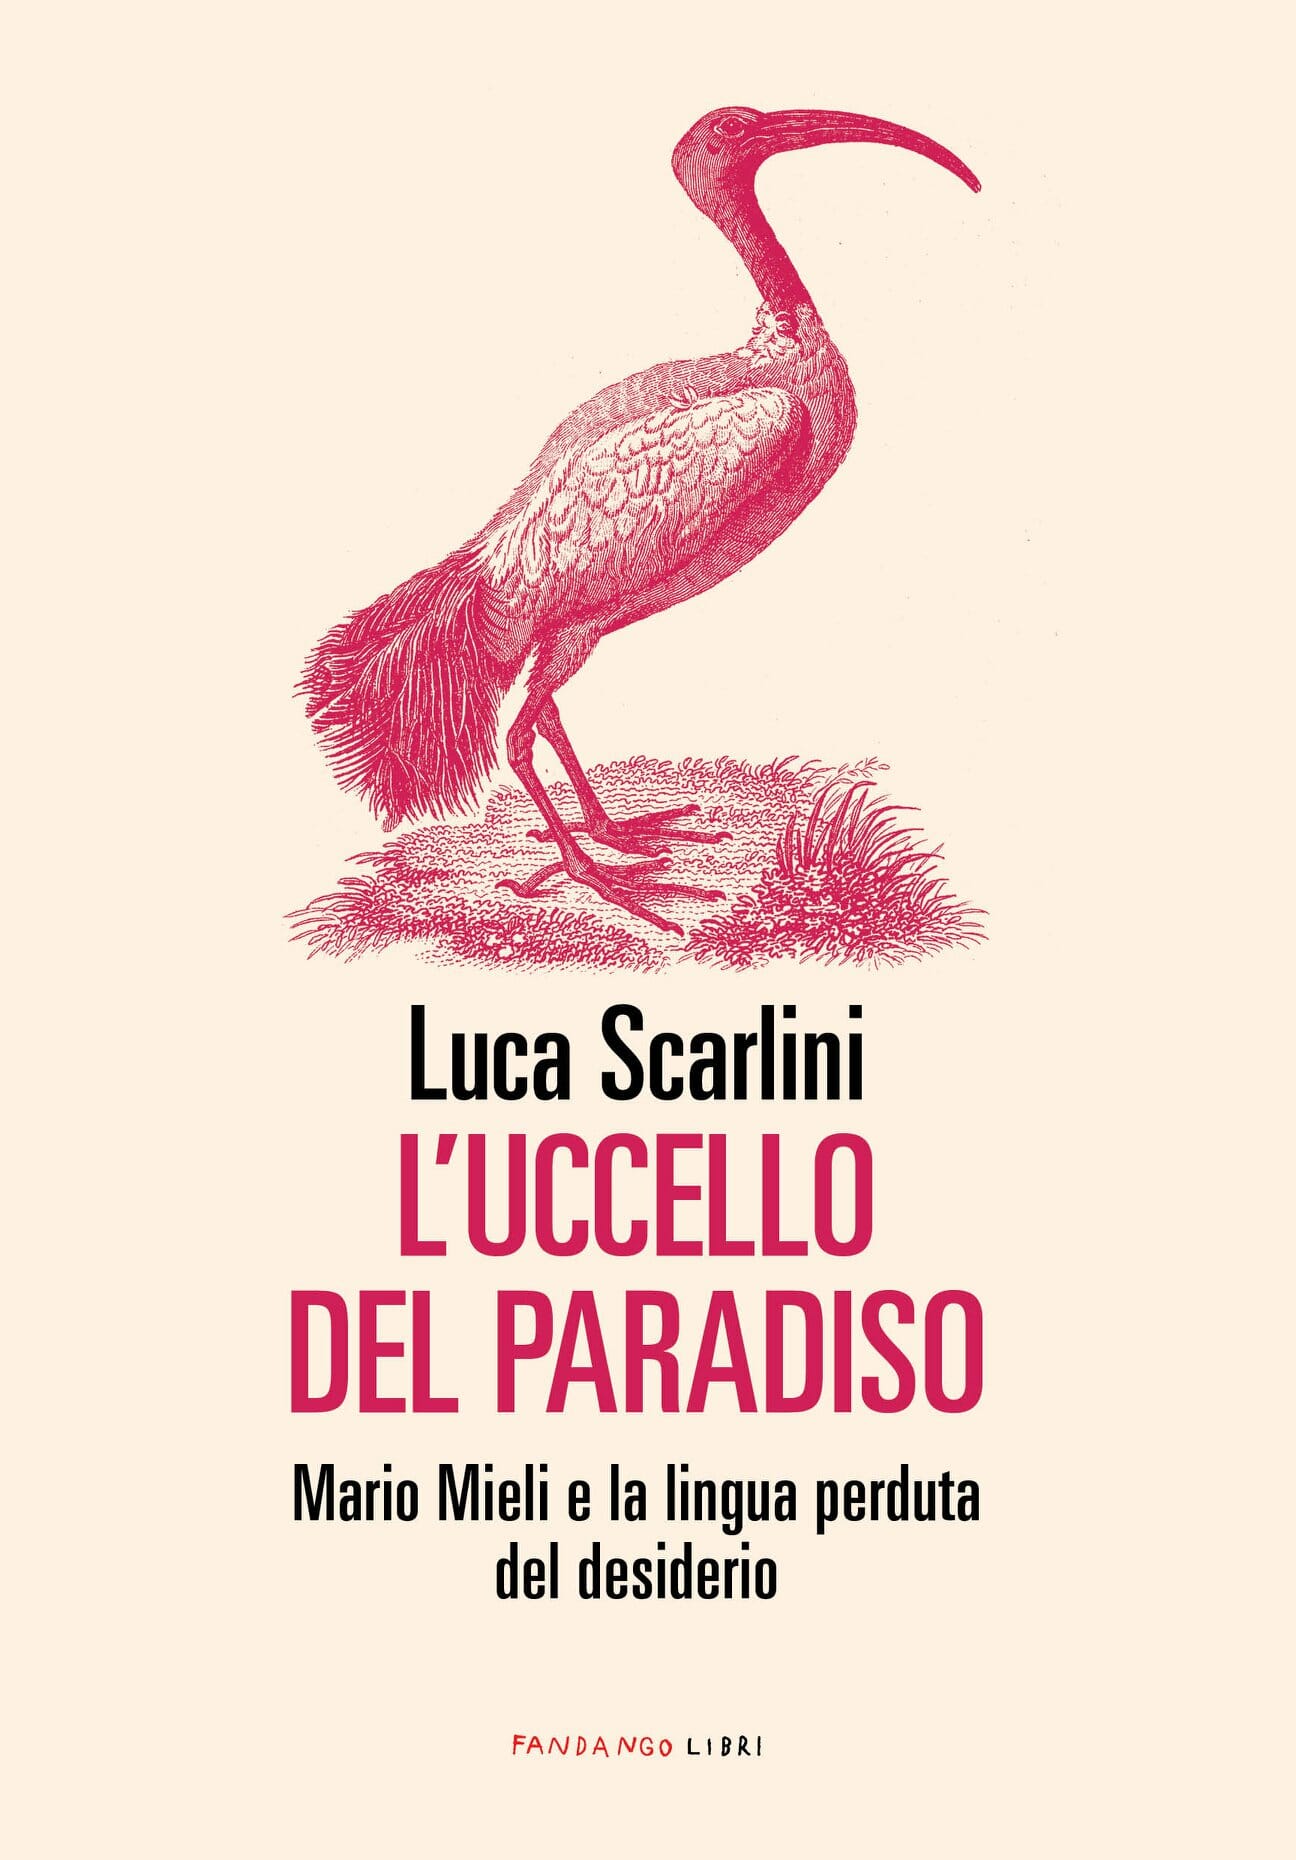 Luca Scarlini L'uccello del paradiso Mario Mieli